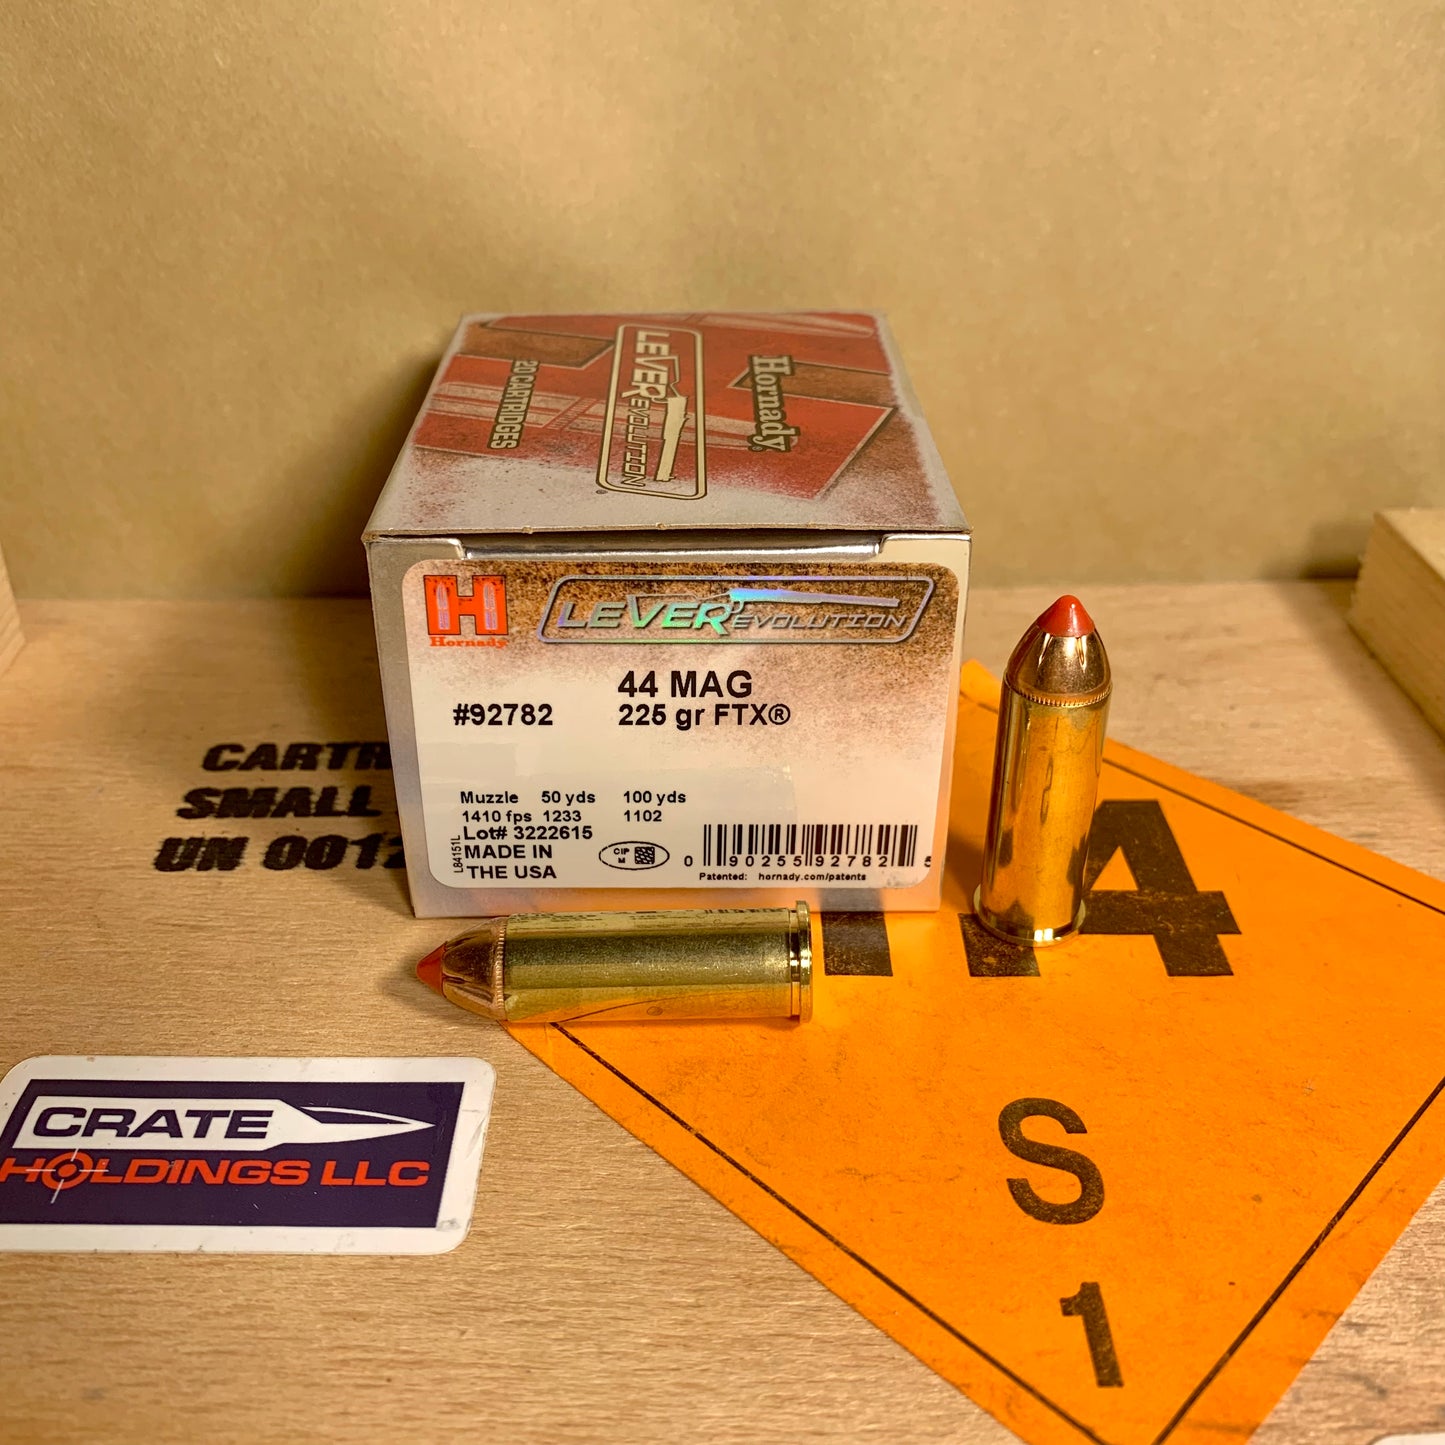 20 Round Box Hornady LeverEvolution .44 Magnum Ammo 225gr FTX - #92782